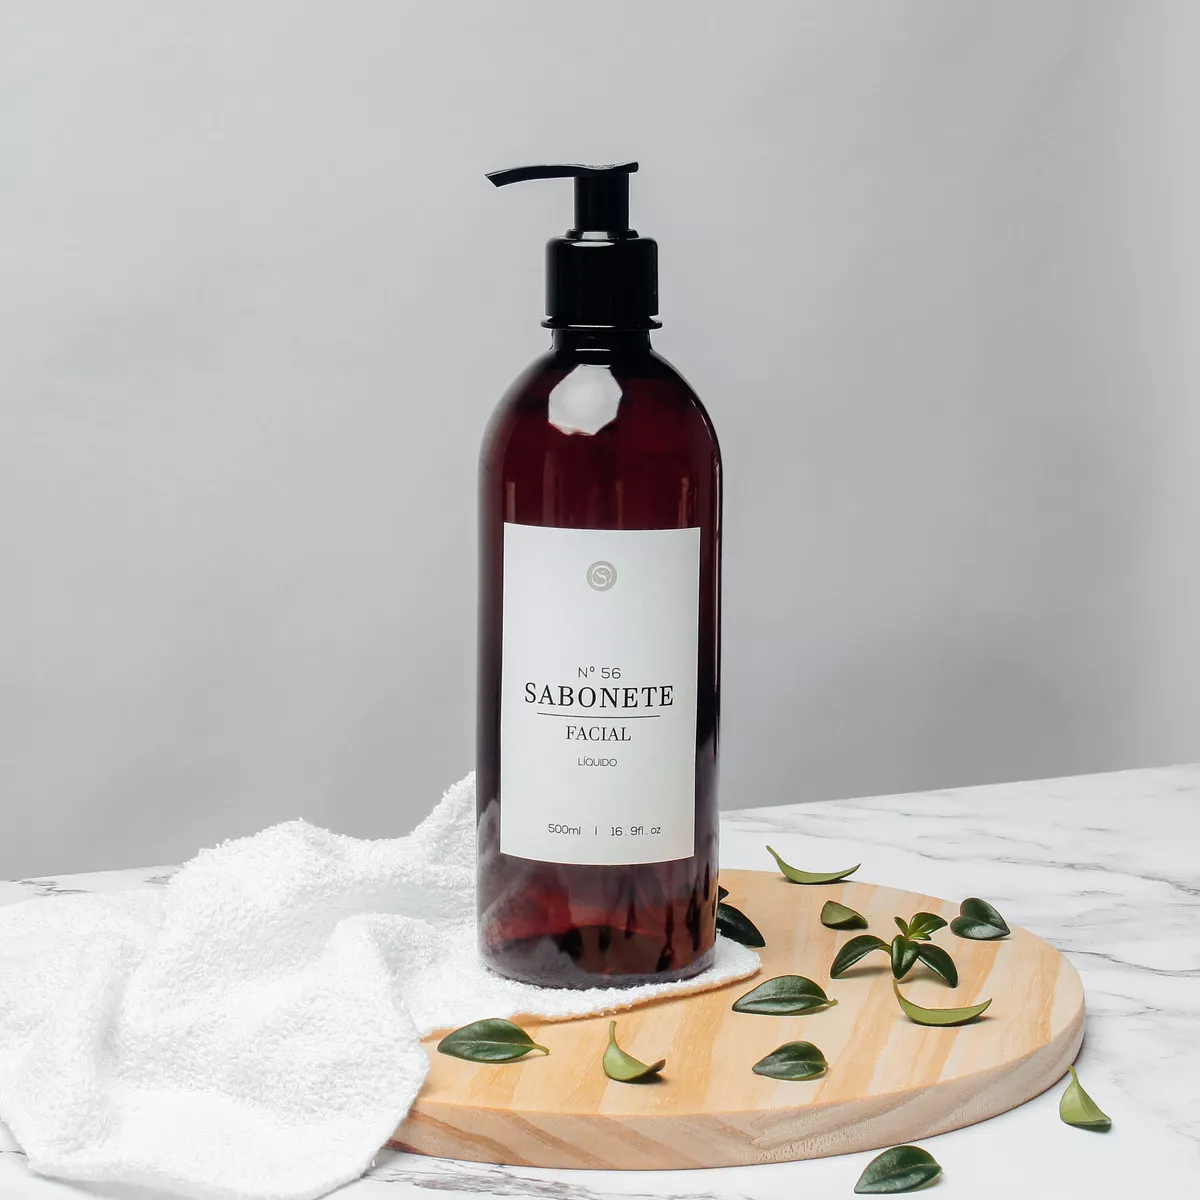 Segunda imagem para pesquisa de dispenser shampoo